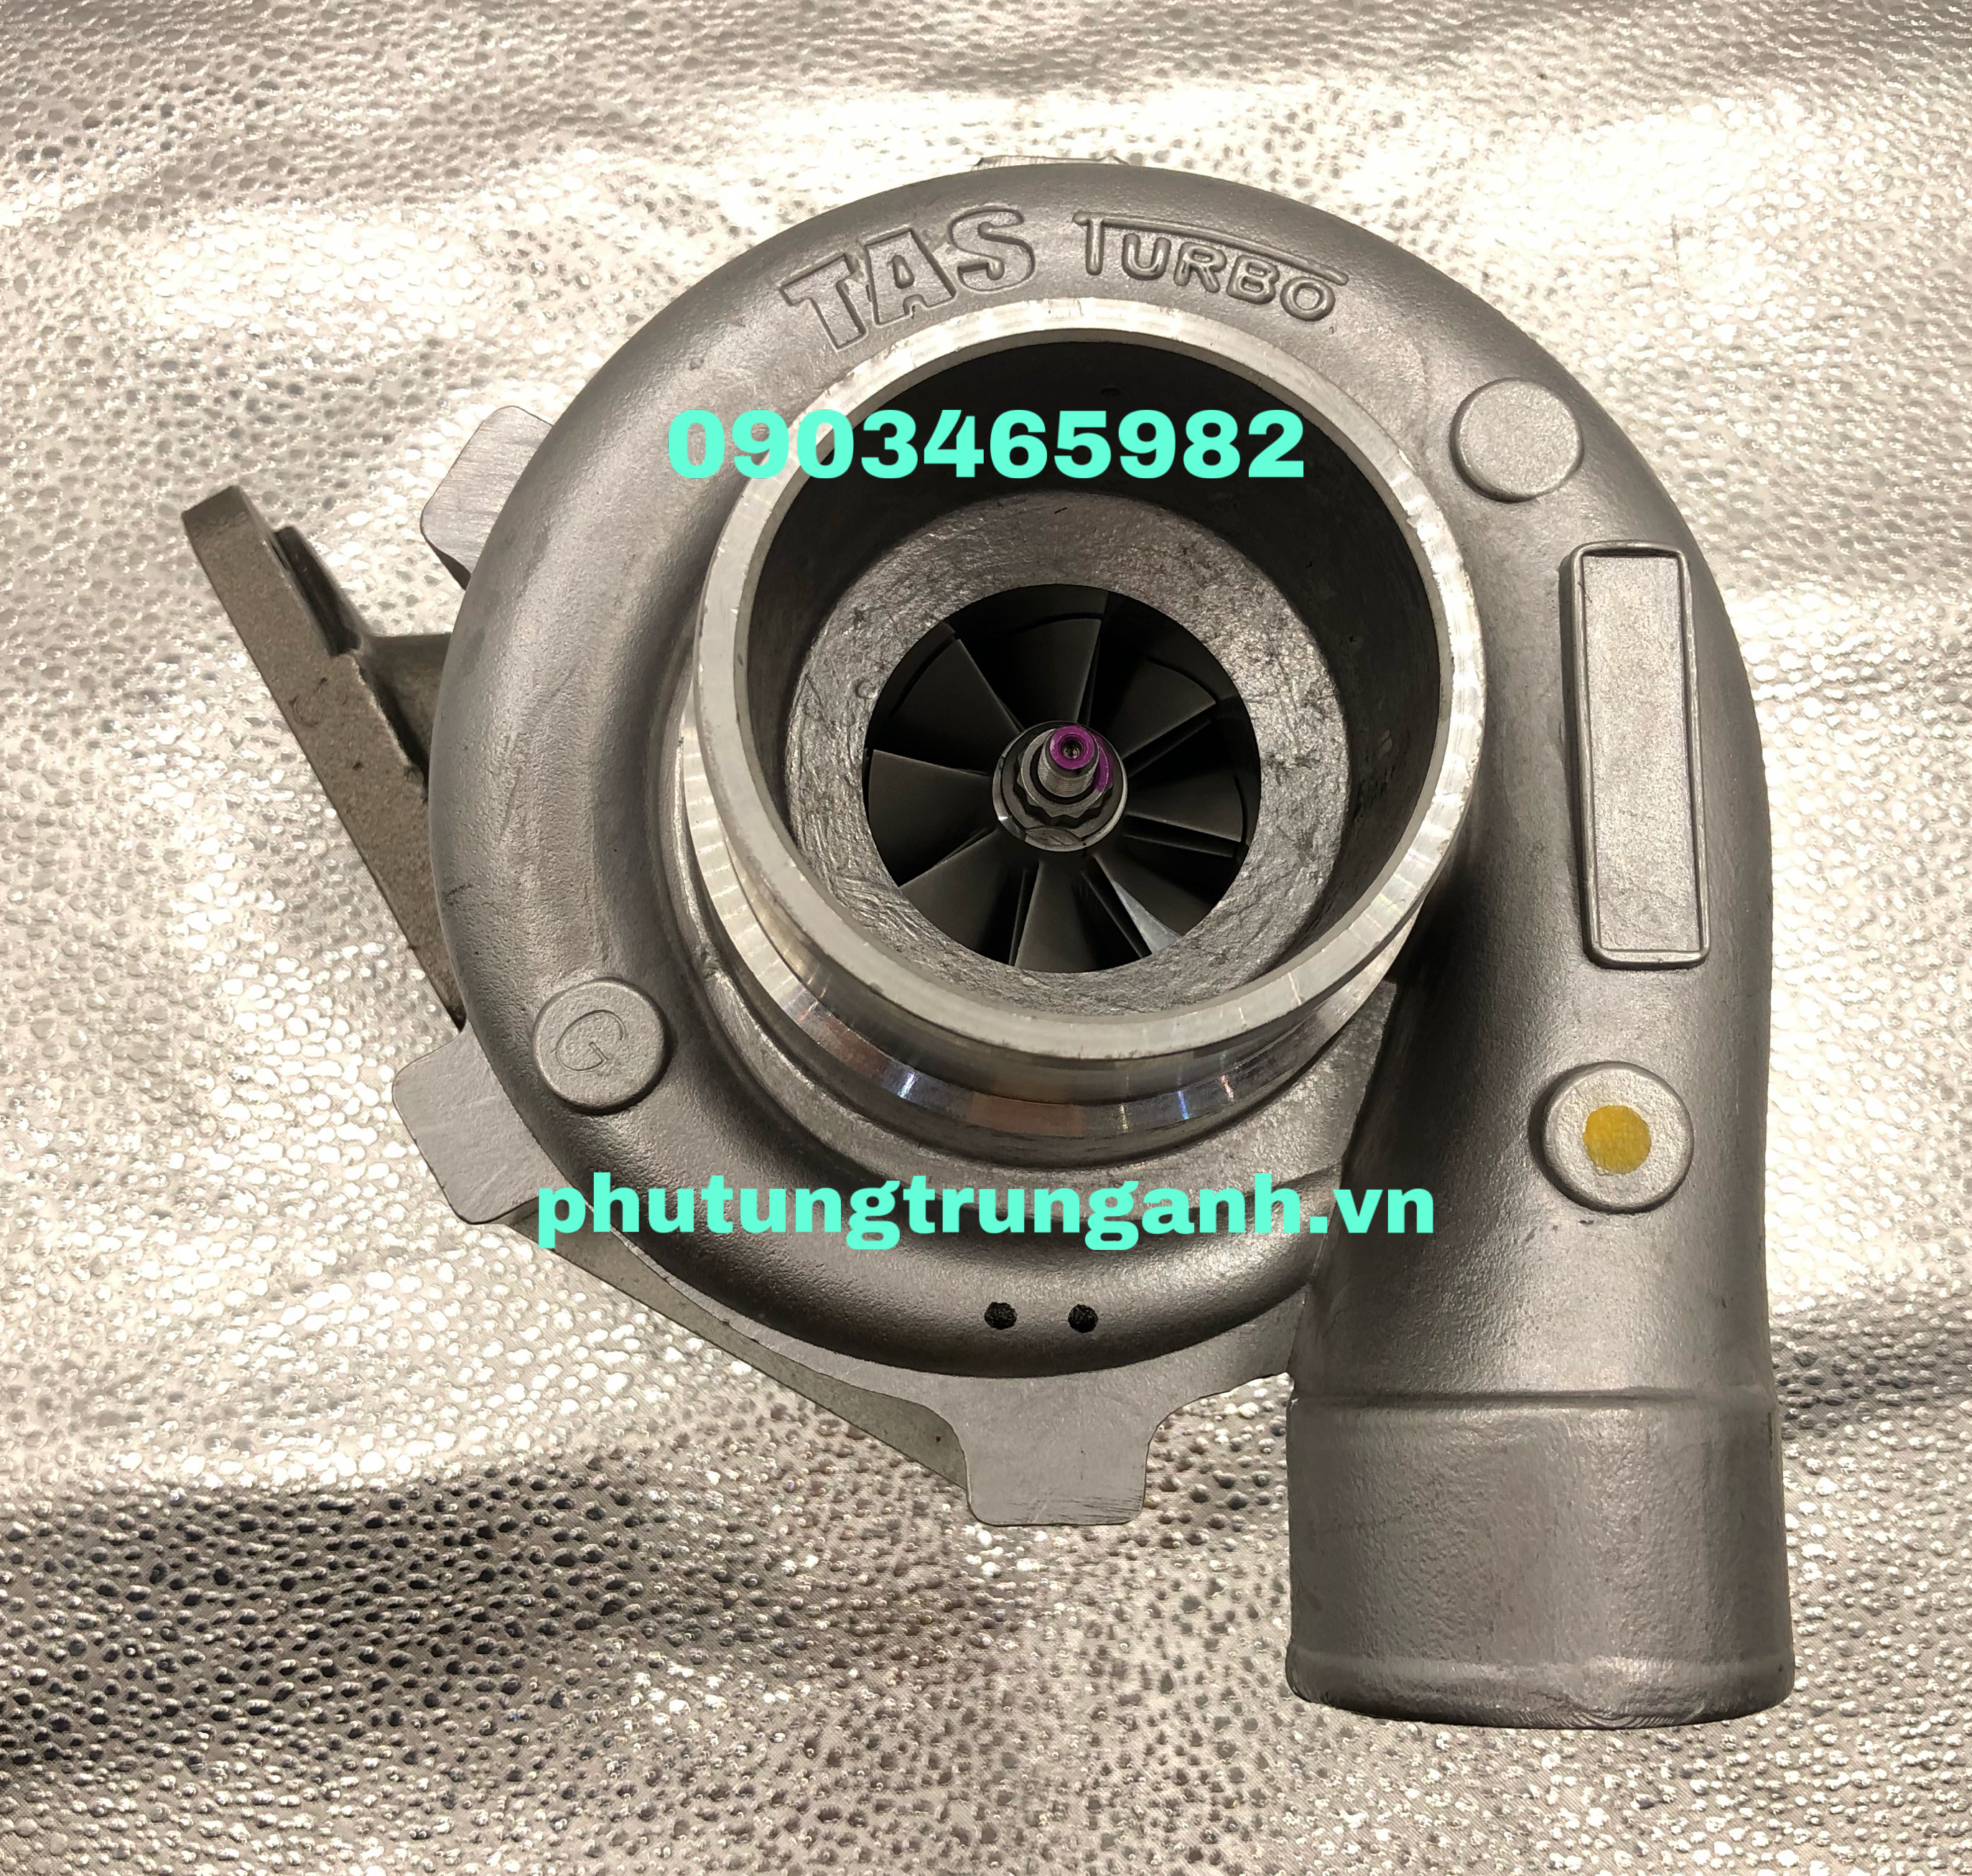 Turbo tăng áp Komatsu PC200-5 / S6D95 / T04B59 / 465044-0251 / 6207-81-8220